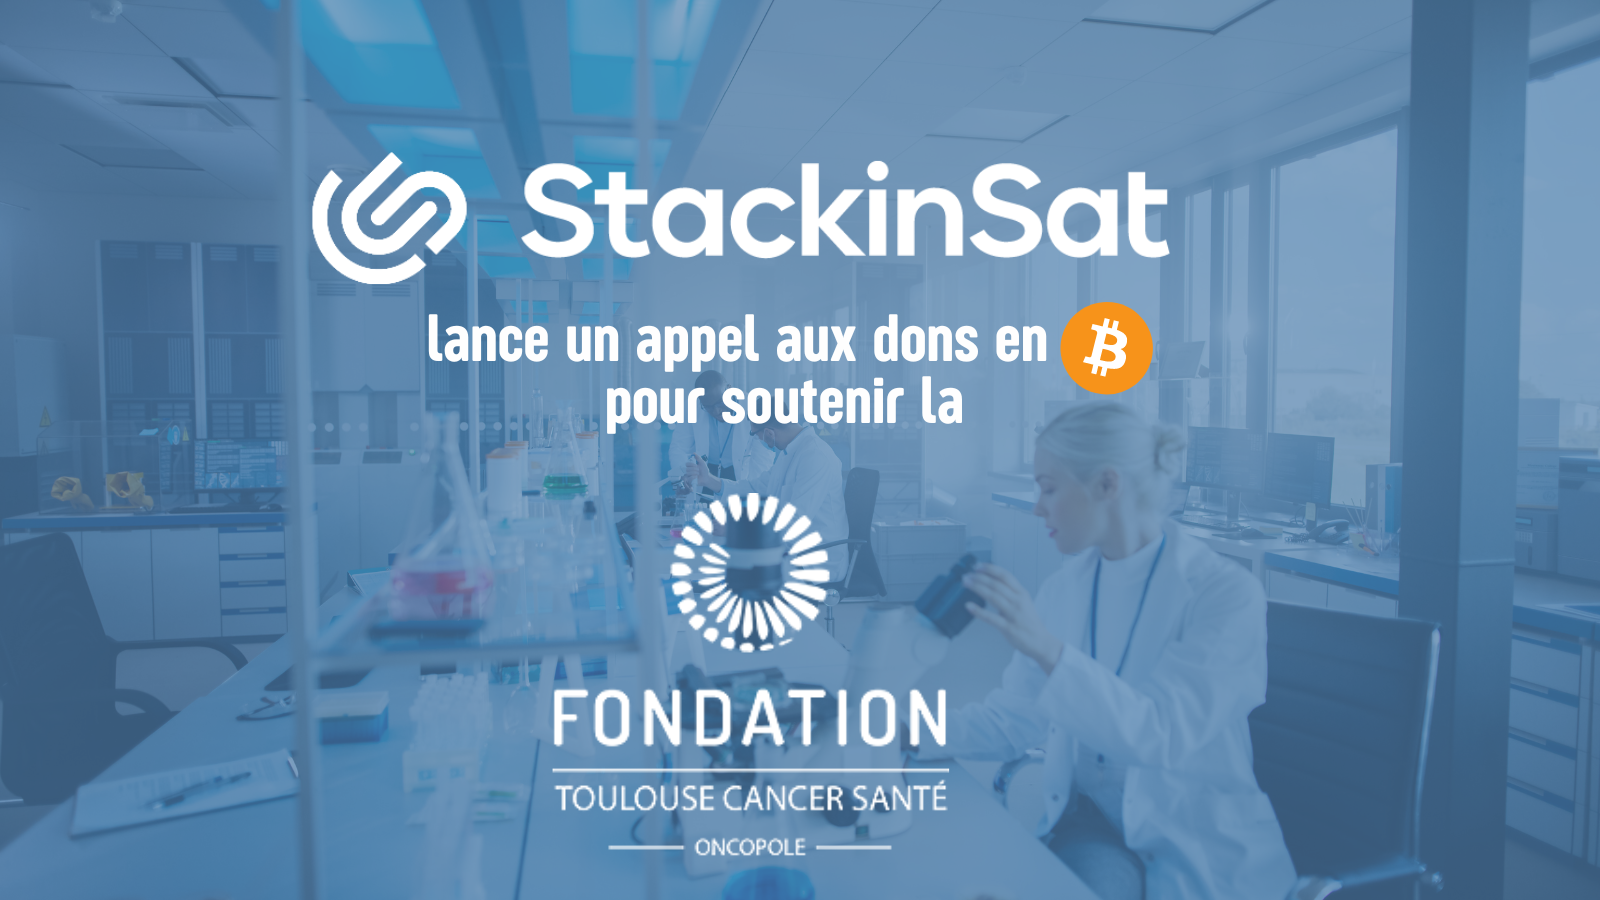 StackinSat lance un appel aux dons en bitcoin pour soutenir la recherche contre le cancer